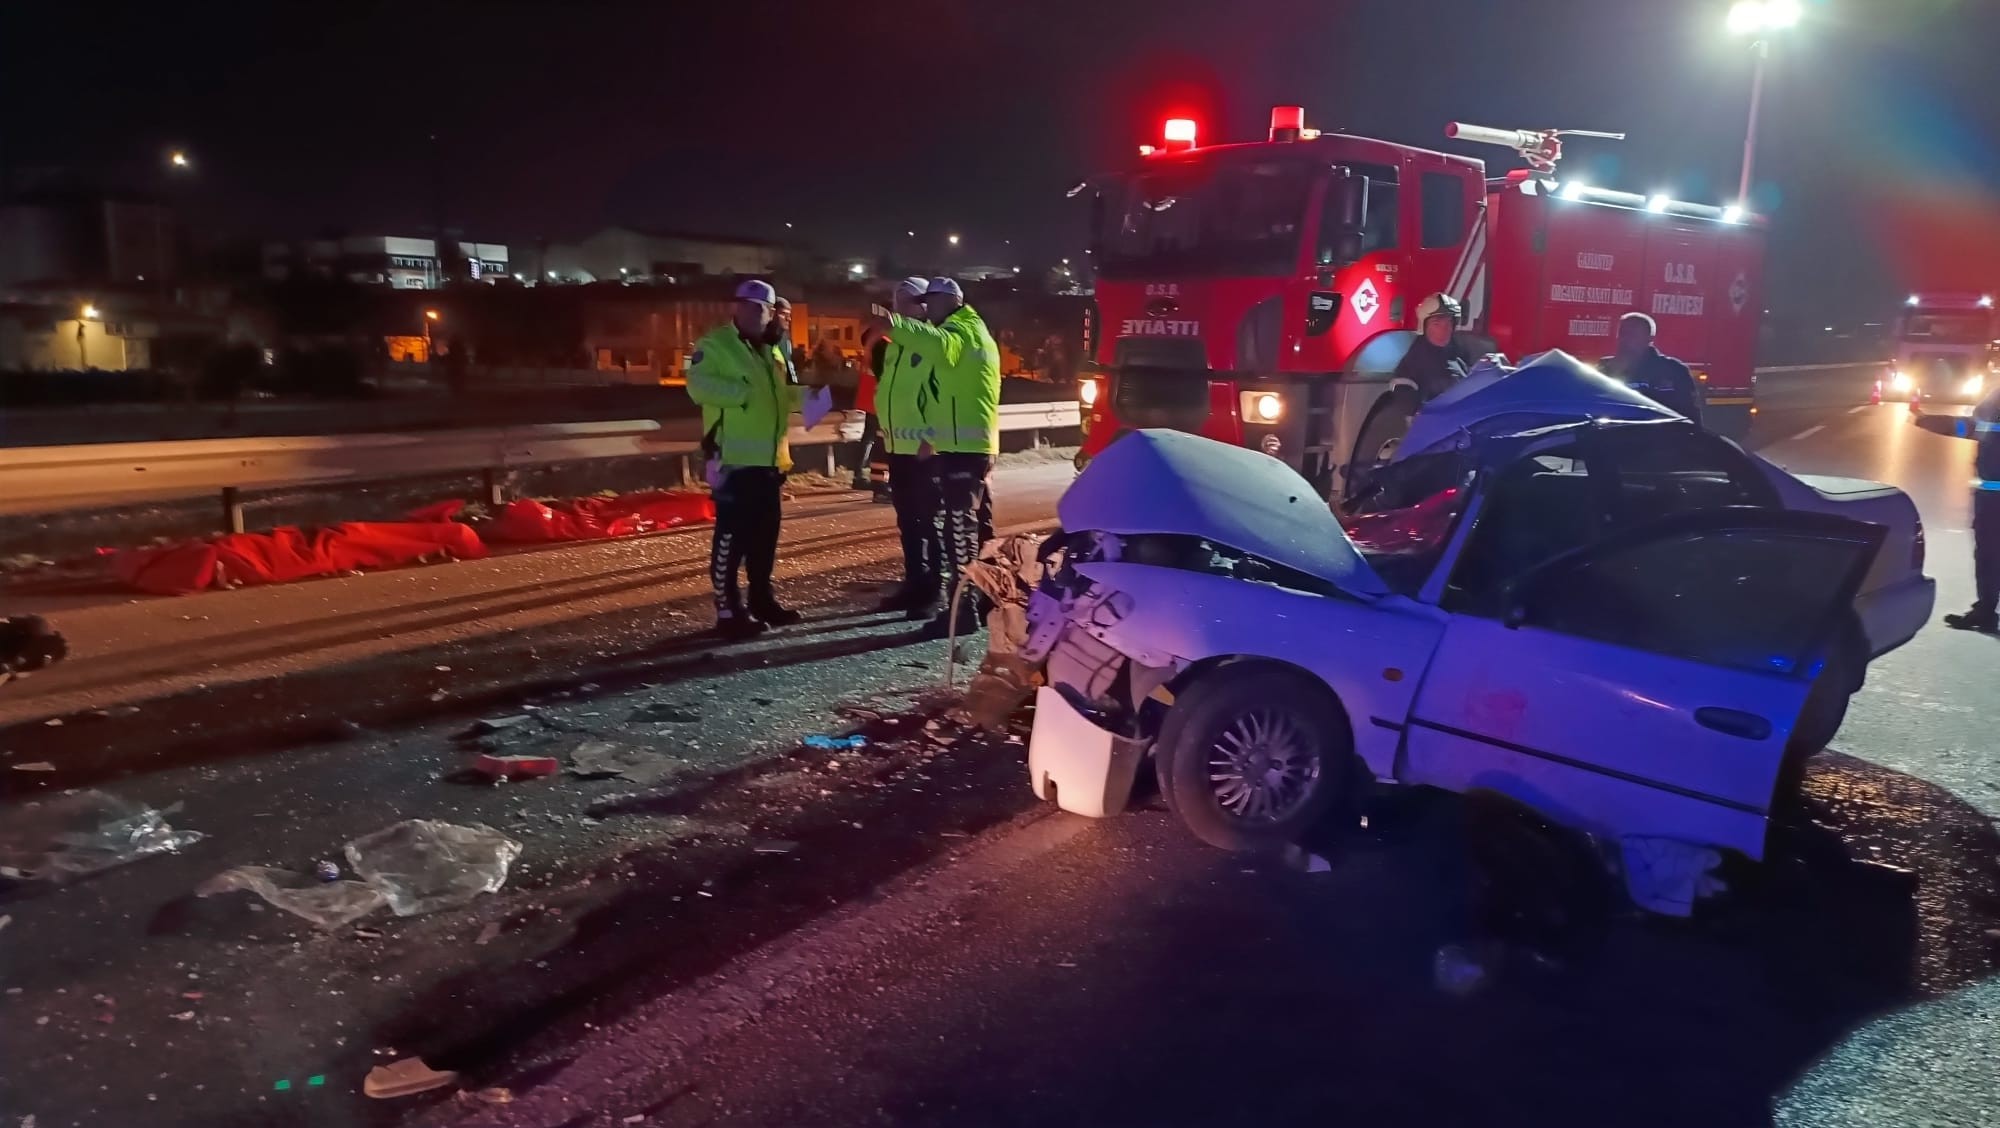 TAG otoyolunda feci trafik kazası: 2 ölü, 5 yaralı - Gazete Yazıyor